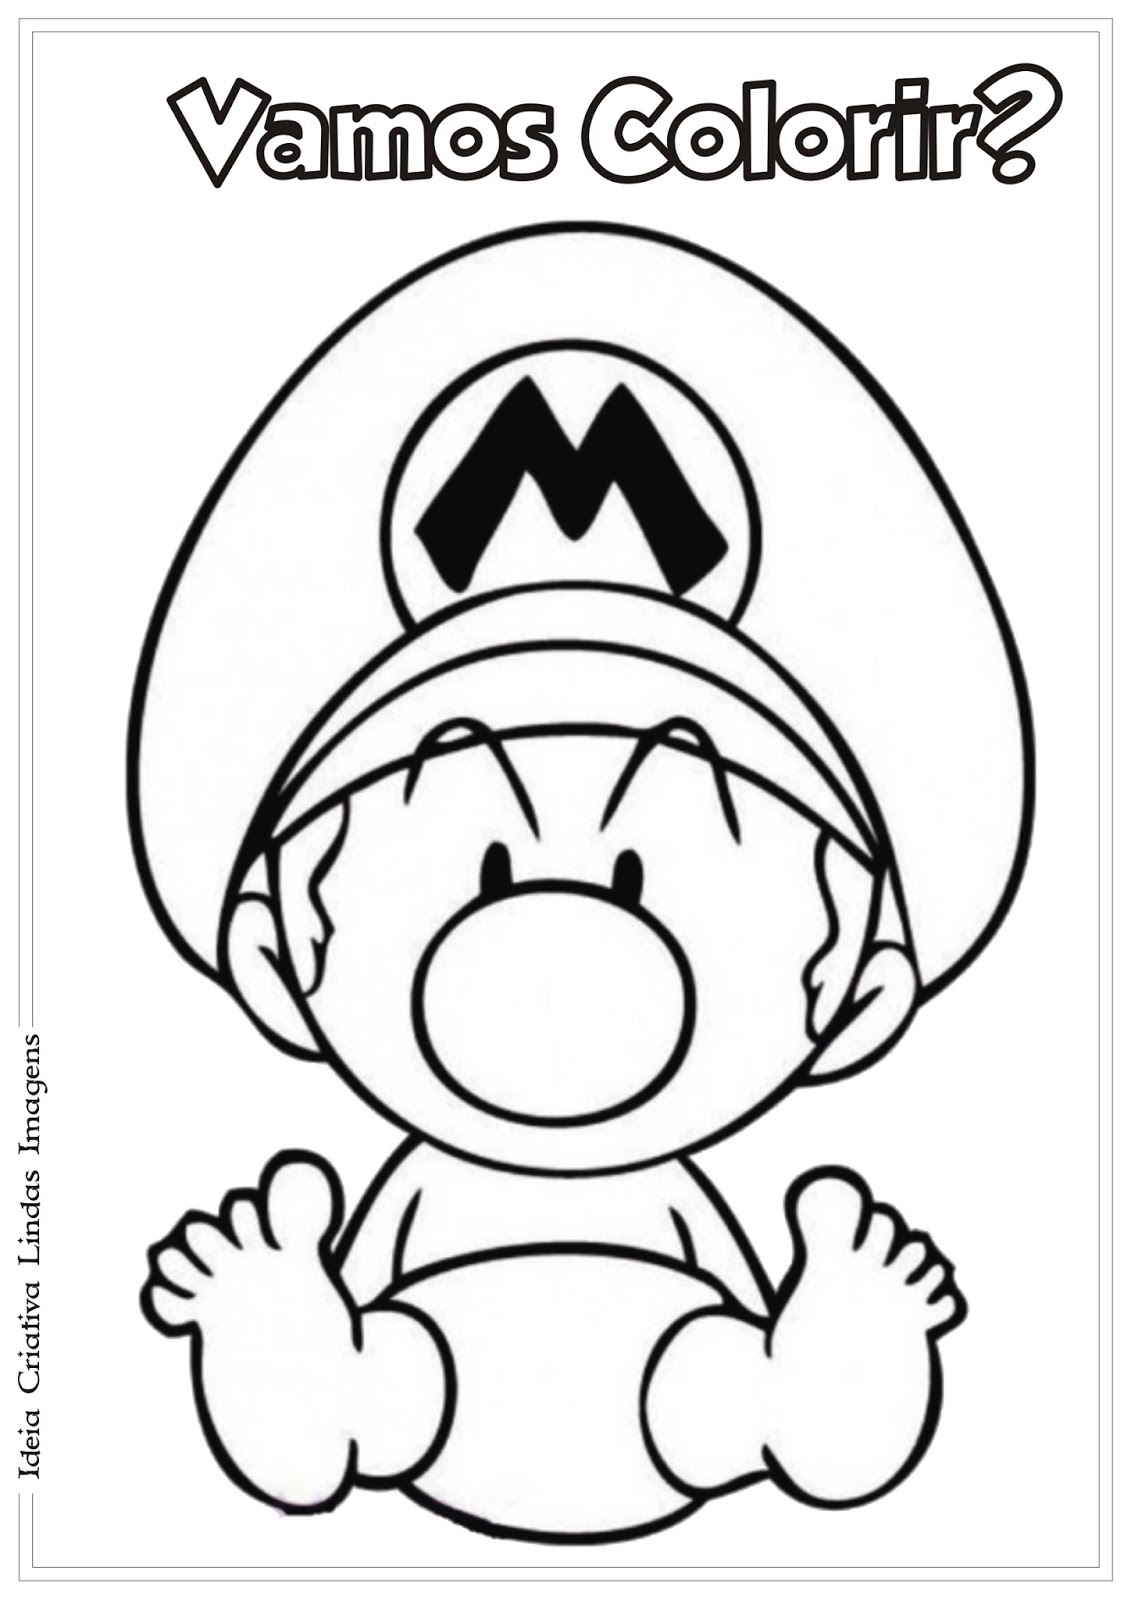 Mario e moto fofos para colorir - Imprimir Desenhos